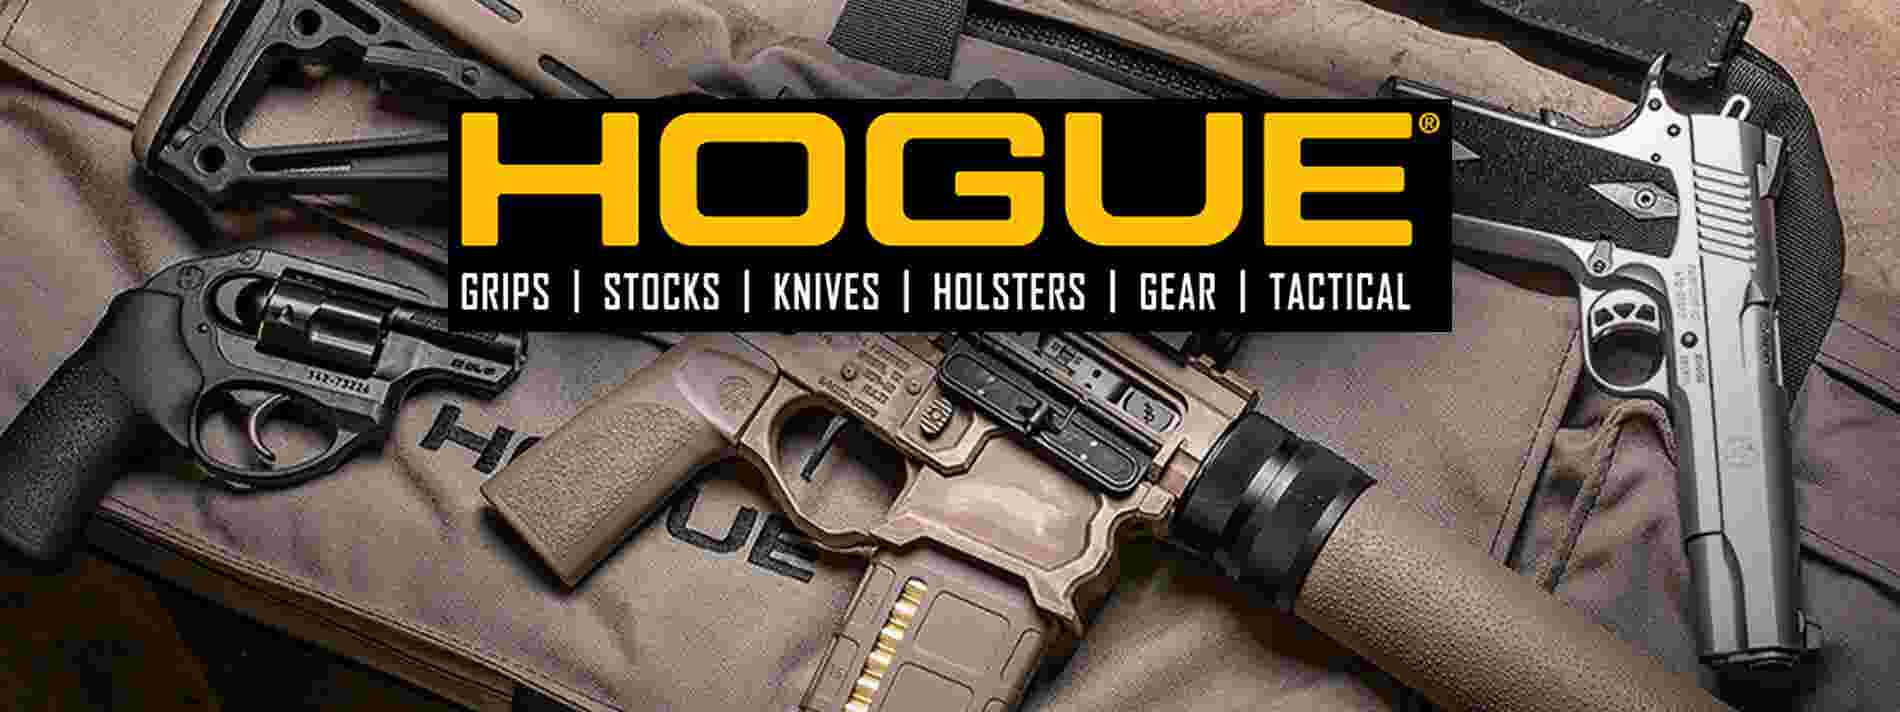 Hogue: Gun Parts, Gun Storage, Knives, Holsters, Belts